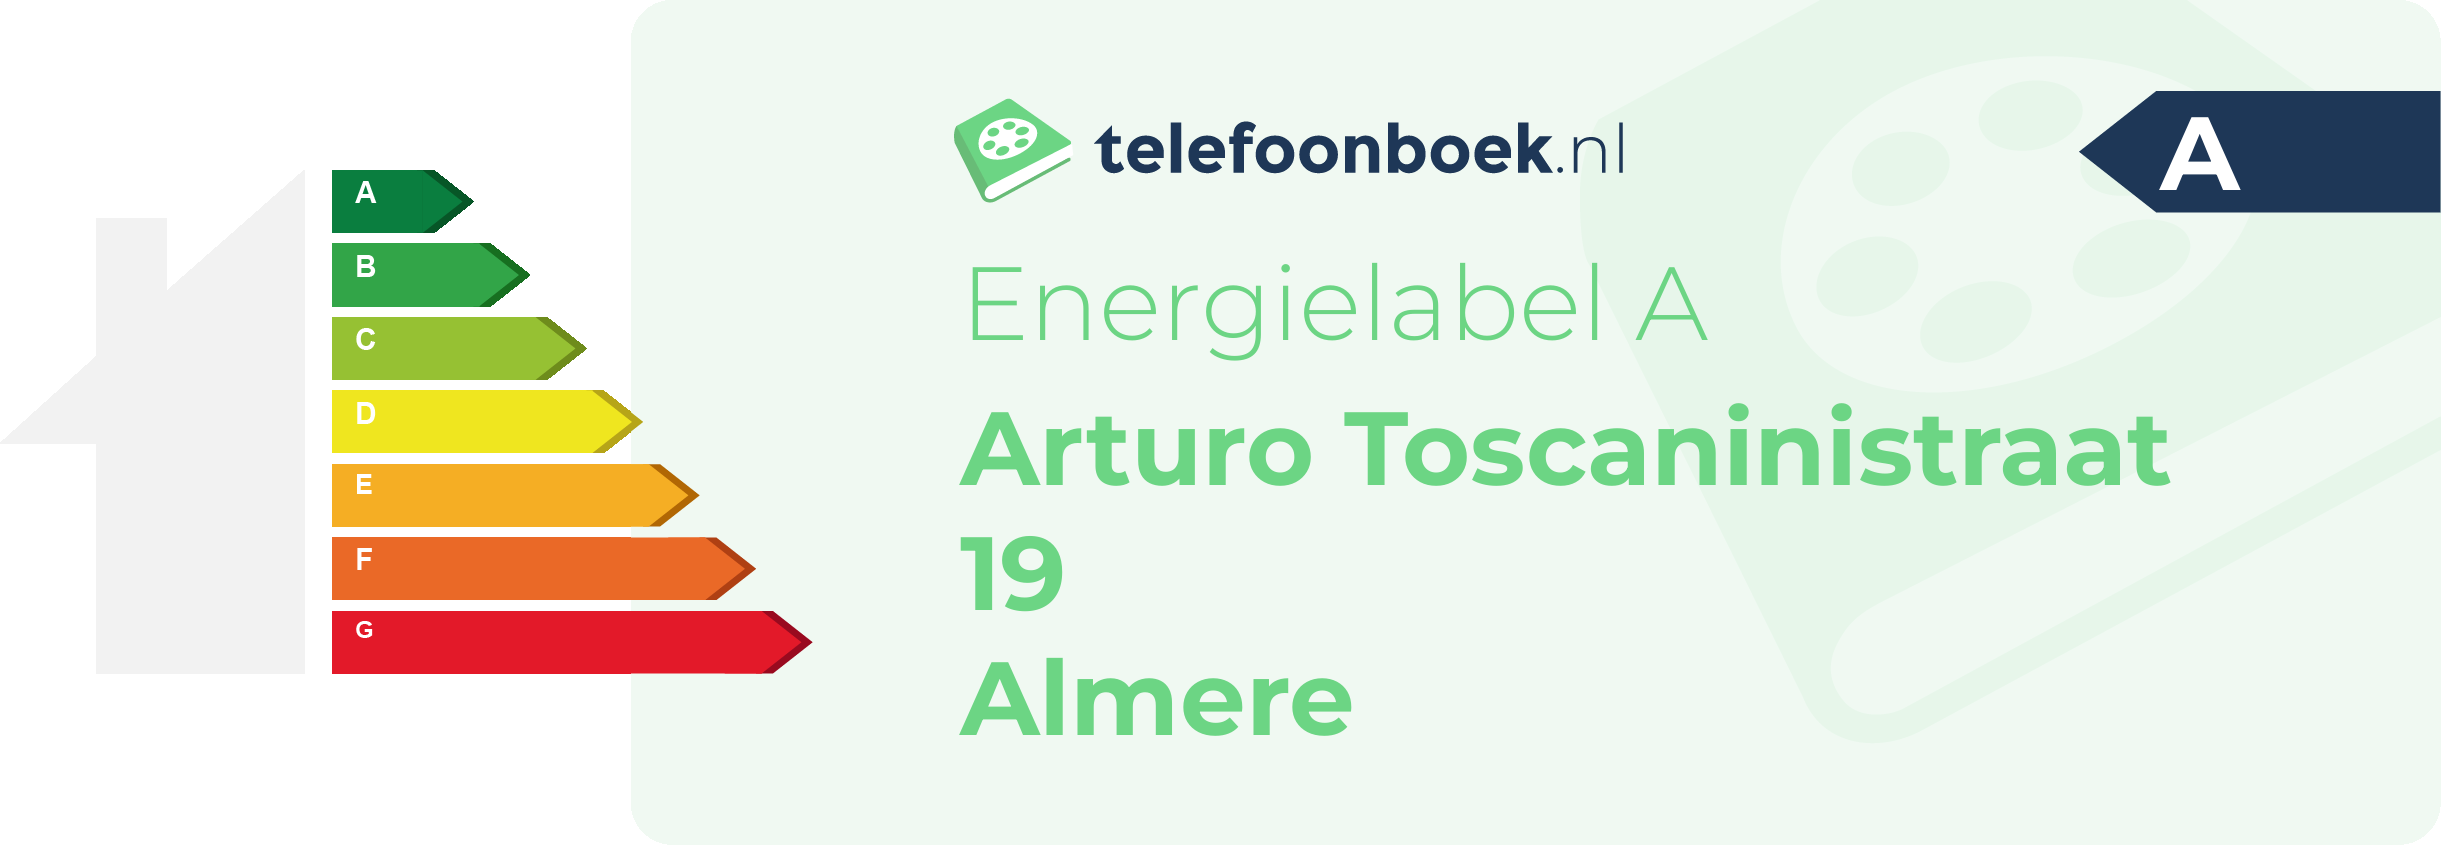 Energielabel Arturo Toscaninistraat 19 Almere